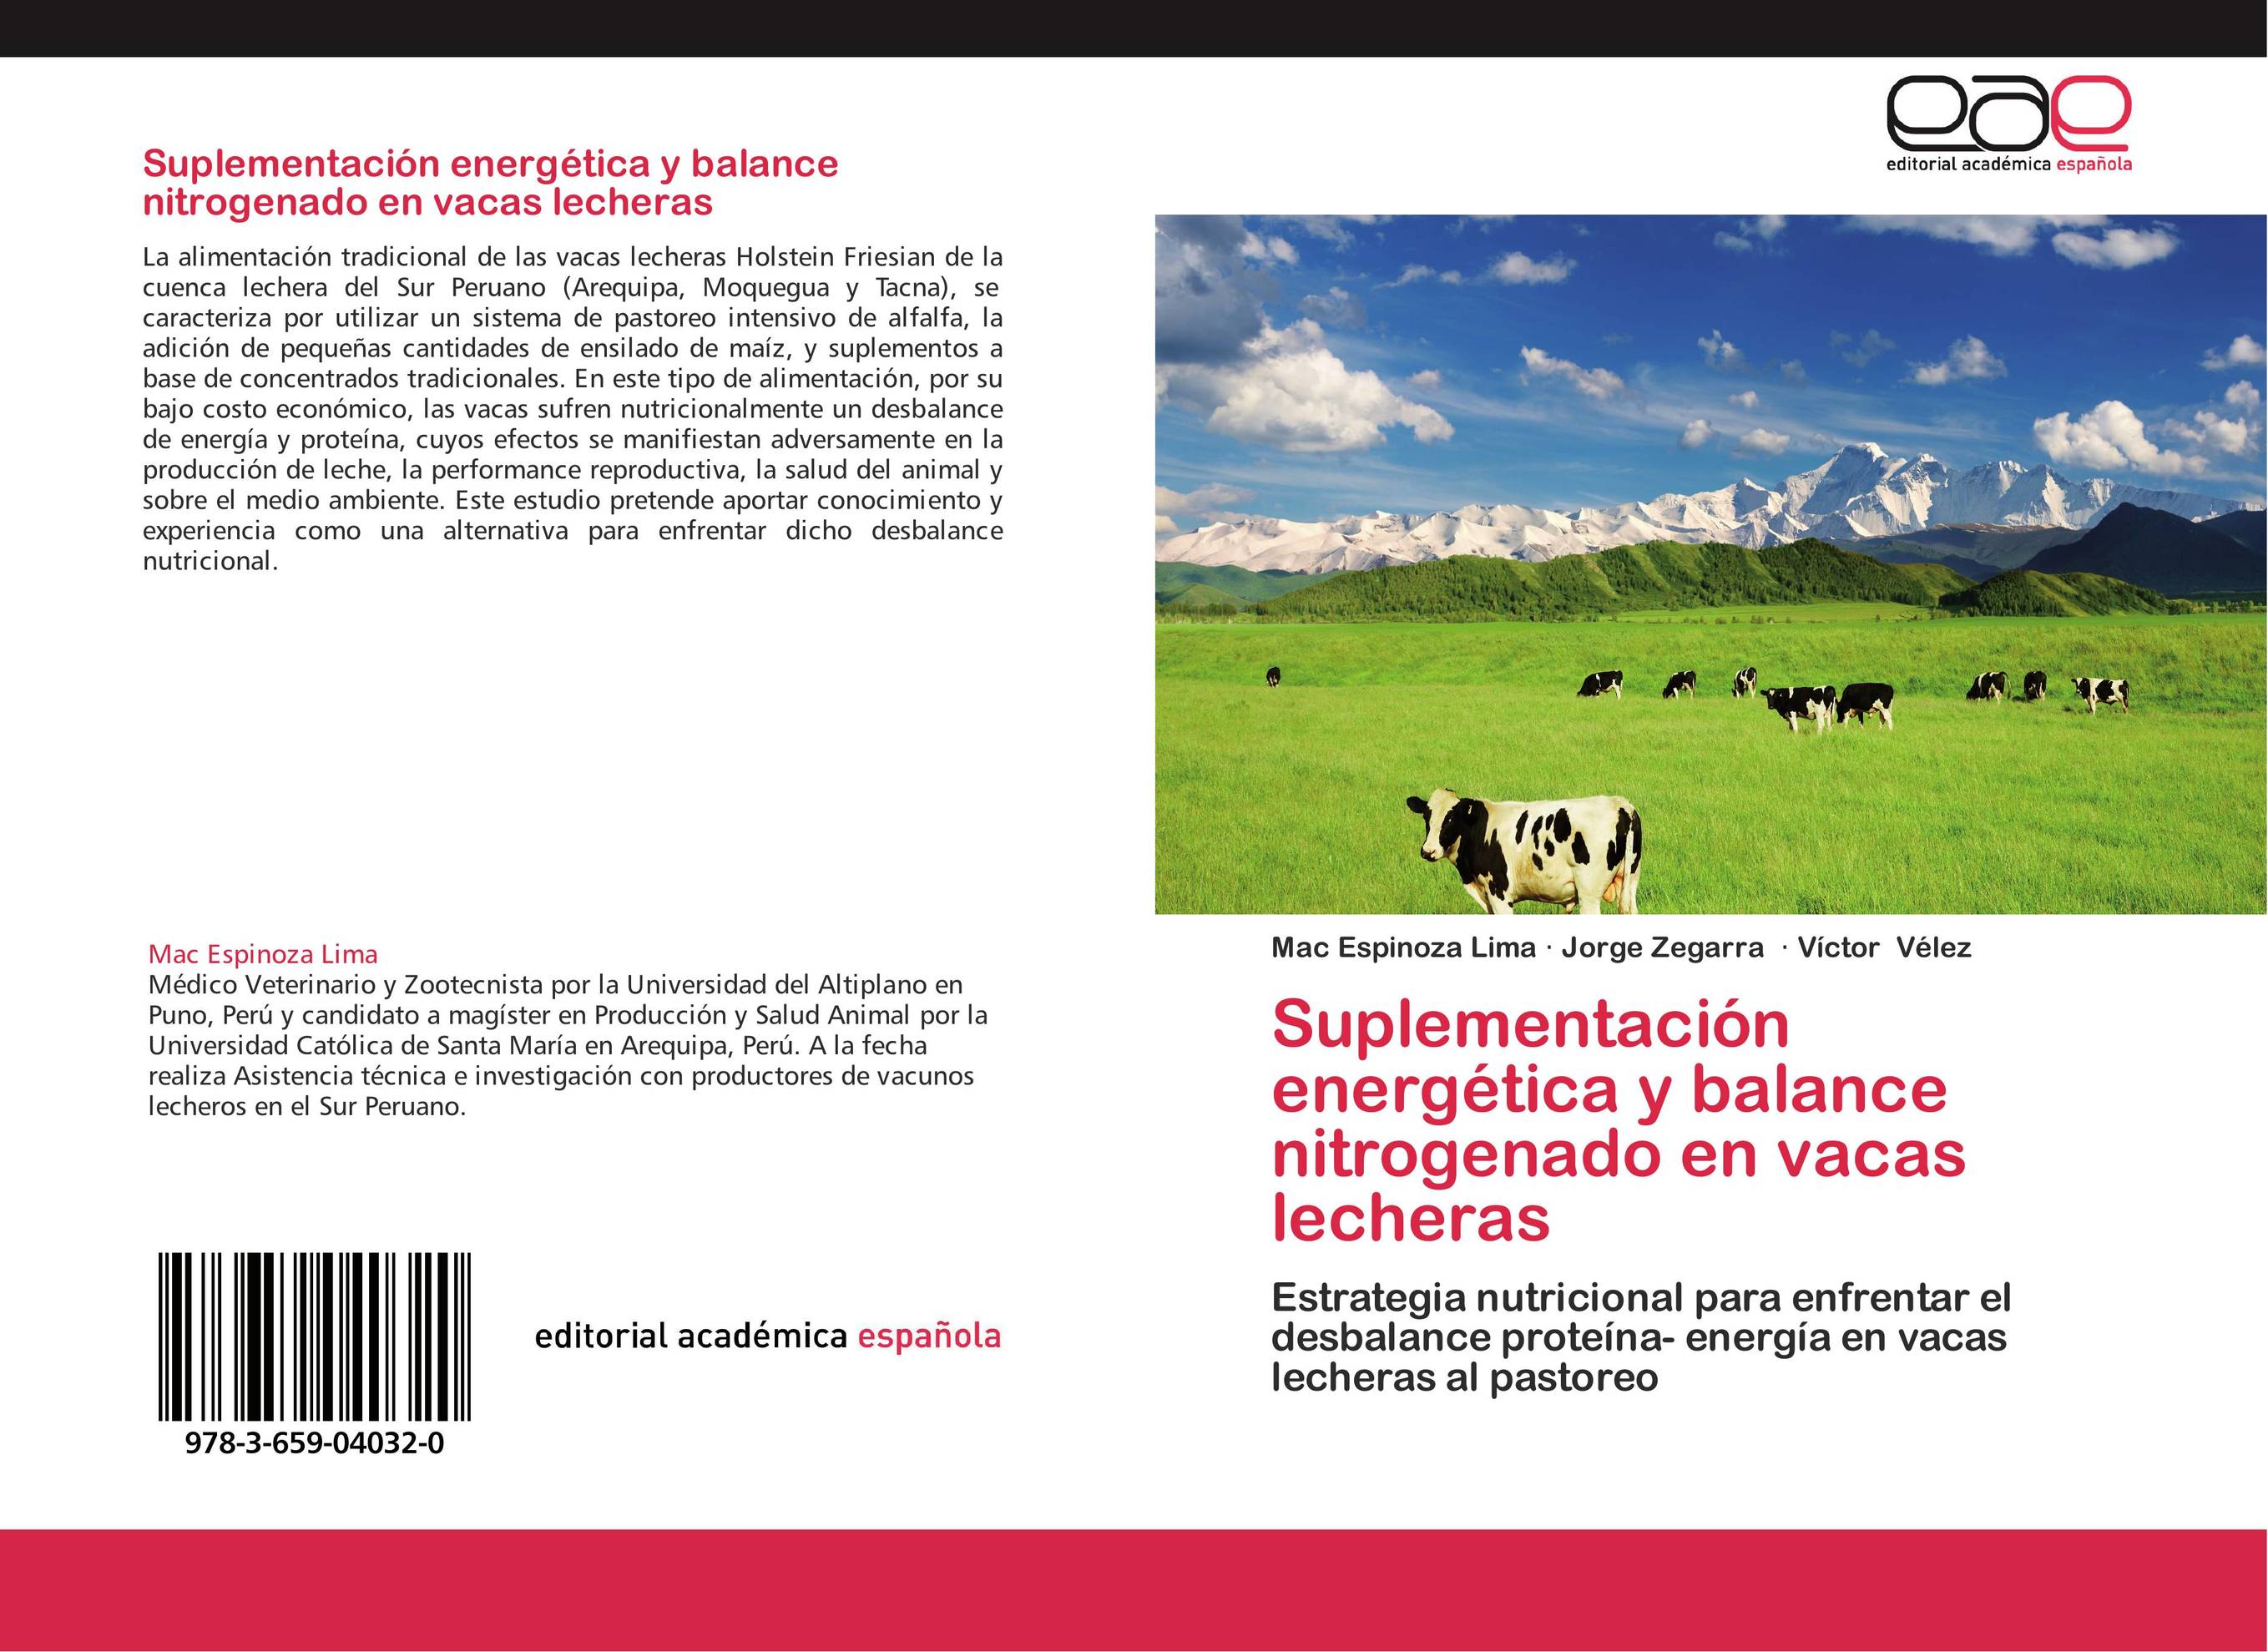 Suplementación energética y balance nitrogenado en vacas lecheras